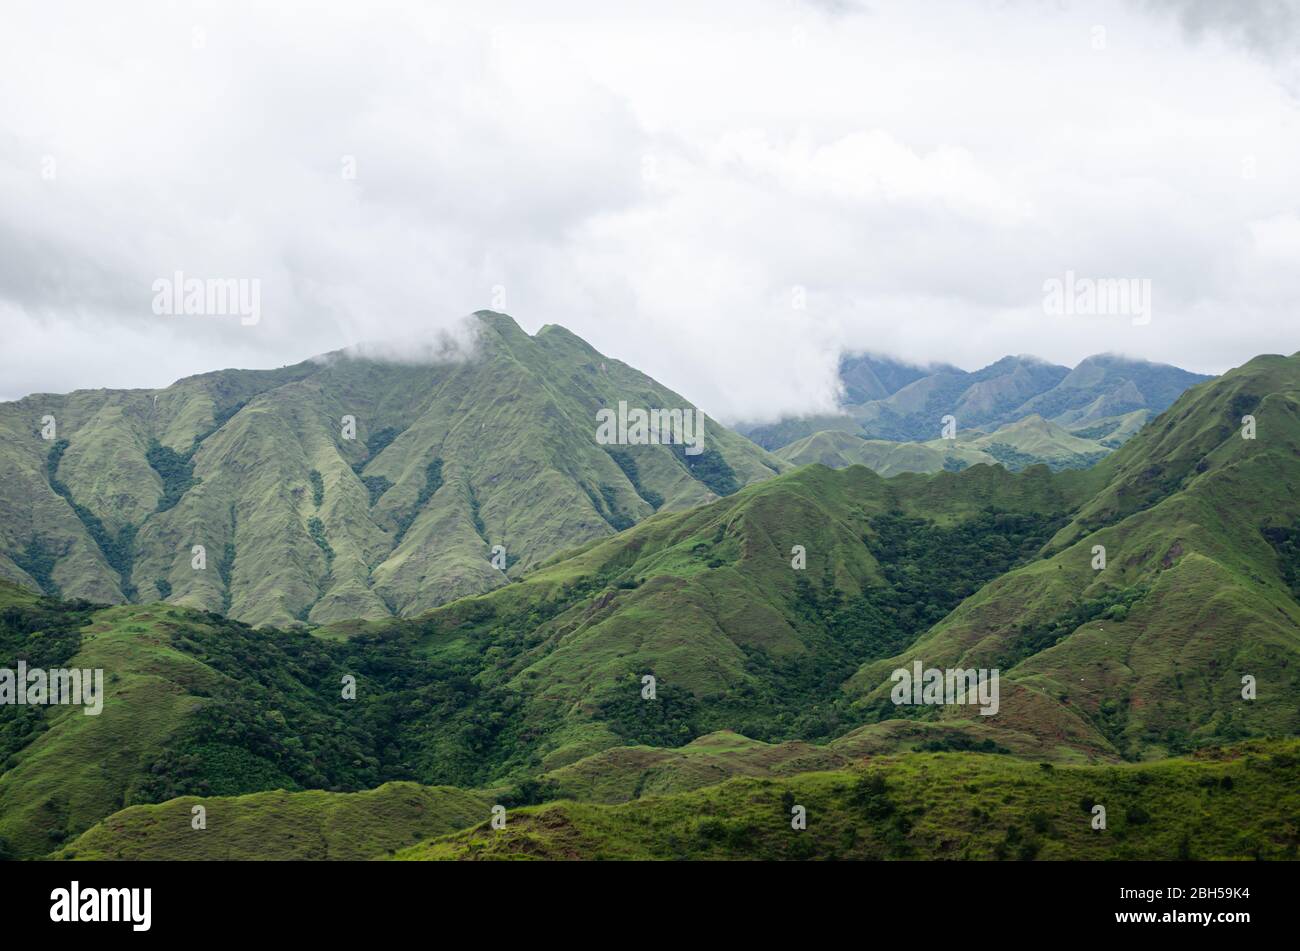 Vista panoramica del pittoresco paesaggio montano nel centro di Panama, con lussureggianti colline verdi sotto un cielo nuvoloso. Foto Stock